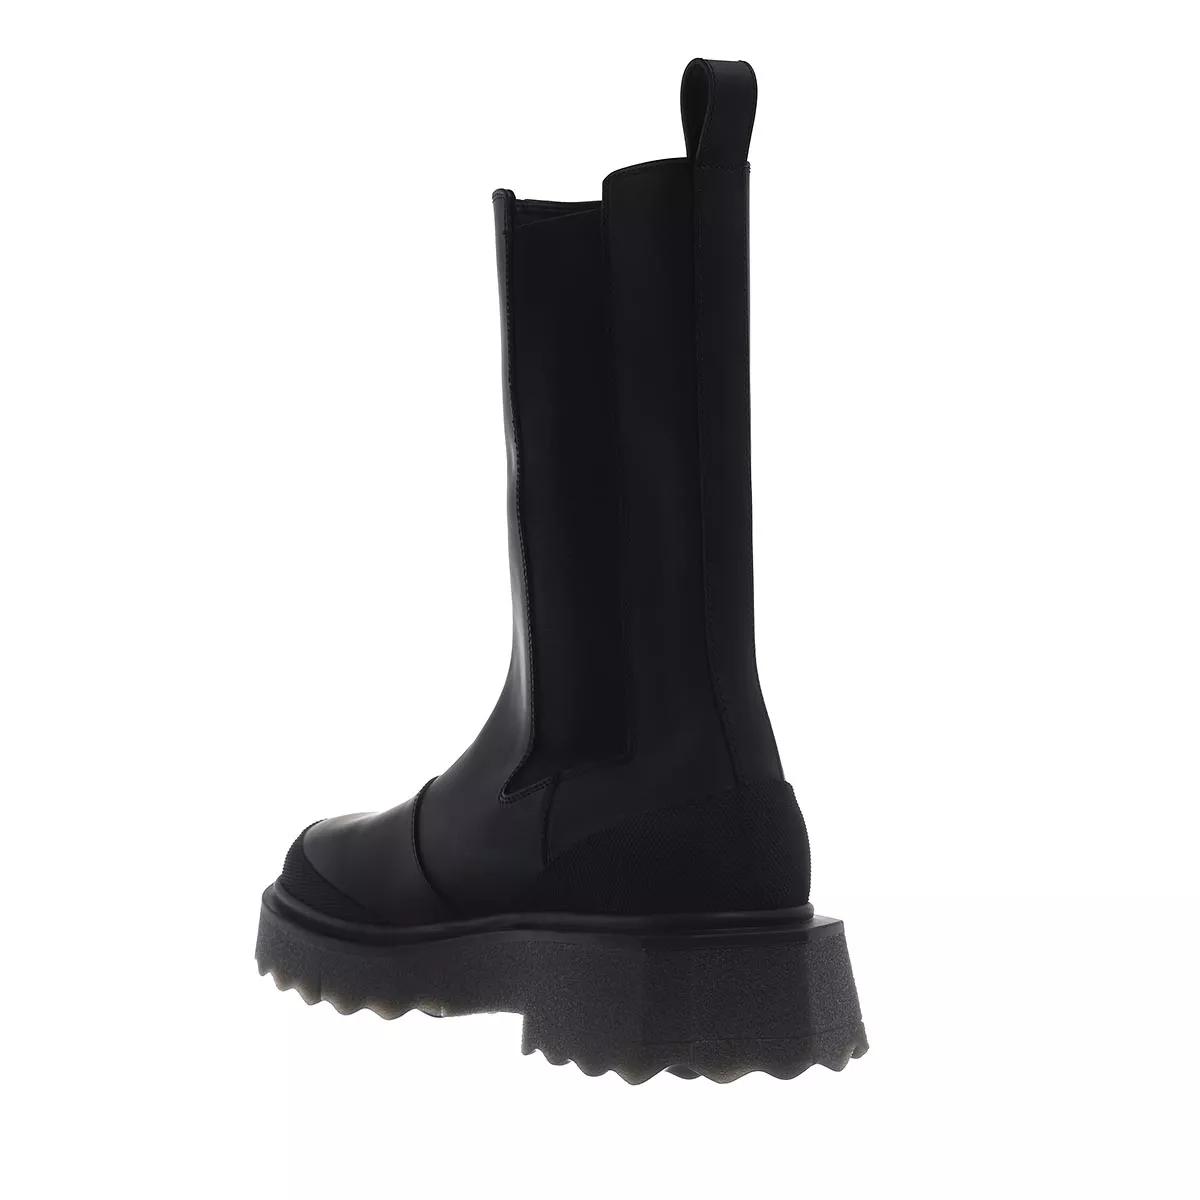 Off-White Boots & Stiefeletten - Calf Sponge Chelsea Boot - Gr. 39 (EU) - in Schwarz - für Damen von Off-White